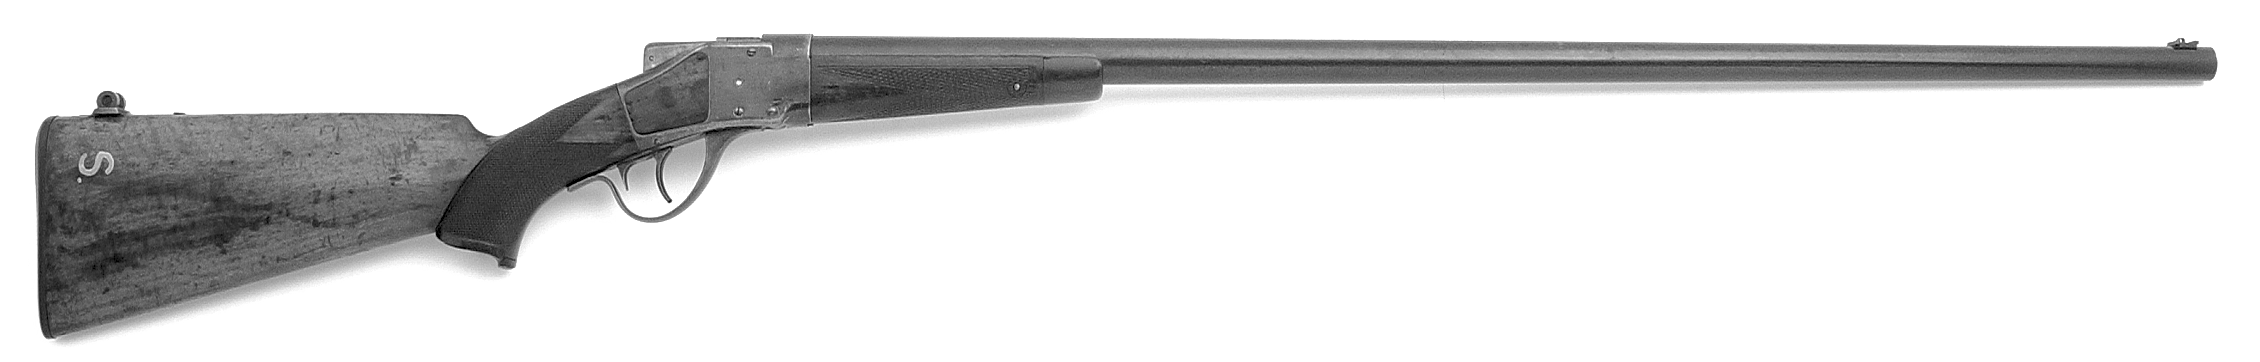 Model 1878 Sharps Borchardt Long-Range Rifle